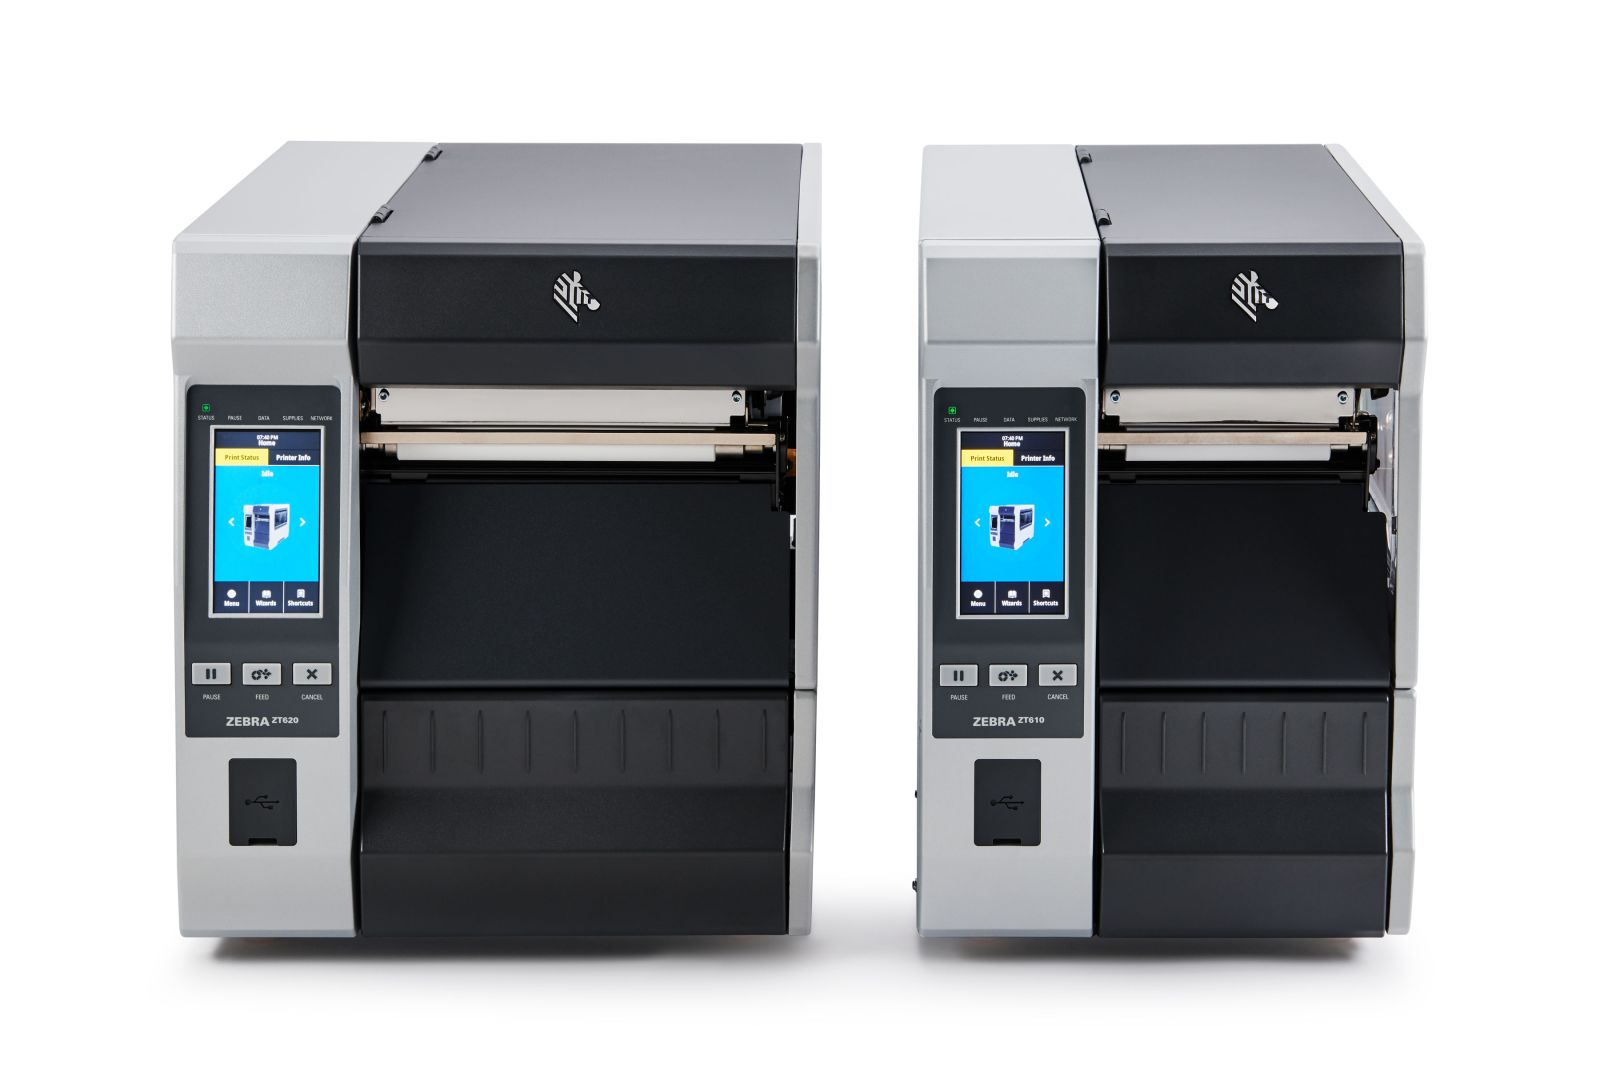 Máy in mã vạch Zebra ZT610: Giải pháp in ấn công nghiệp hiệu quả và linh hoạt